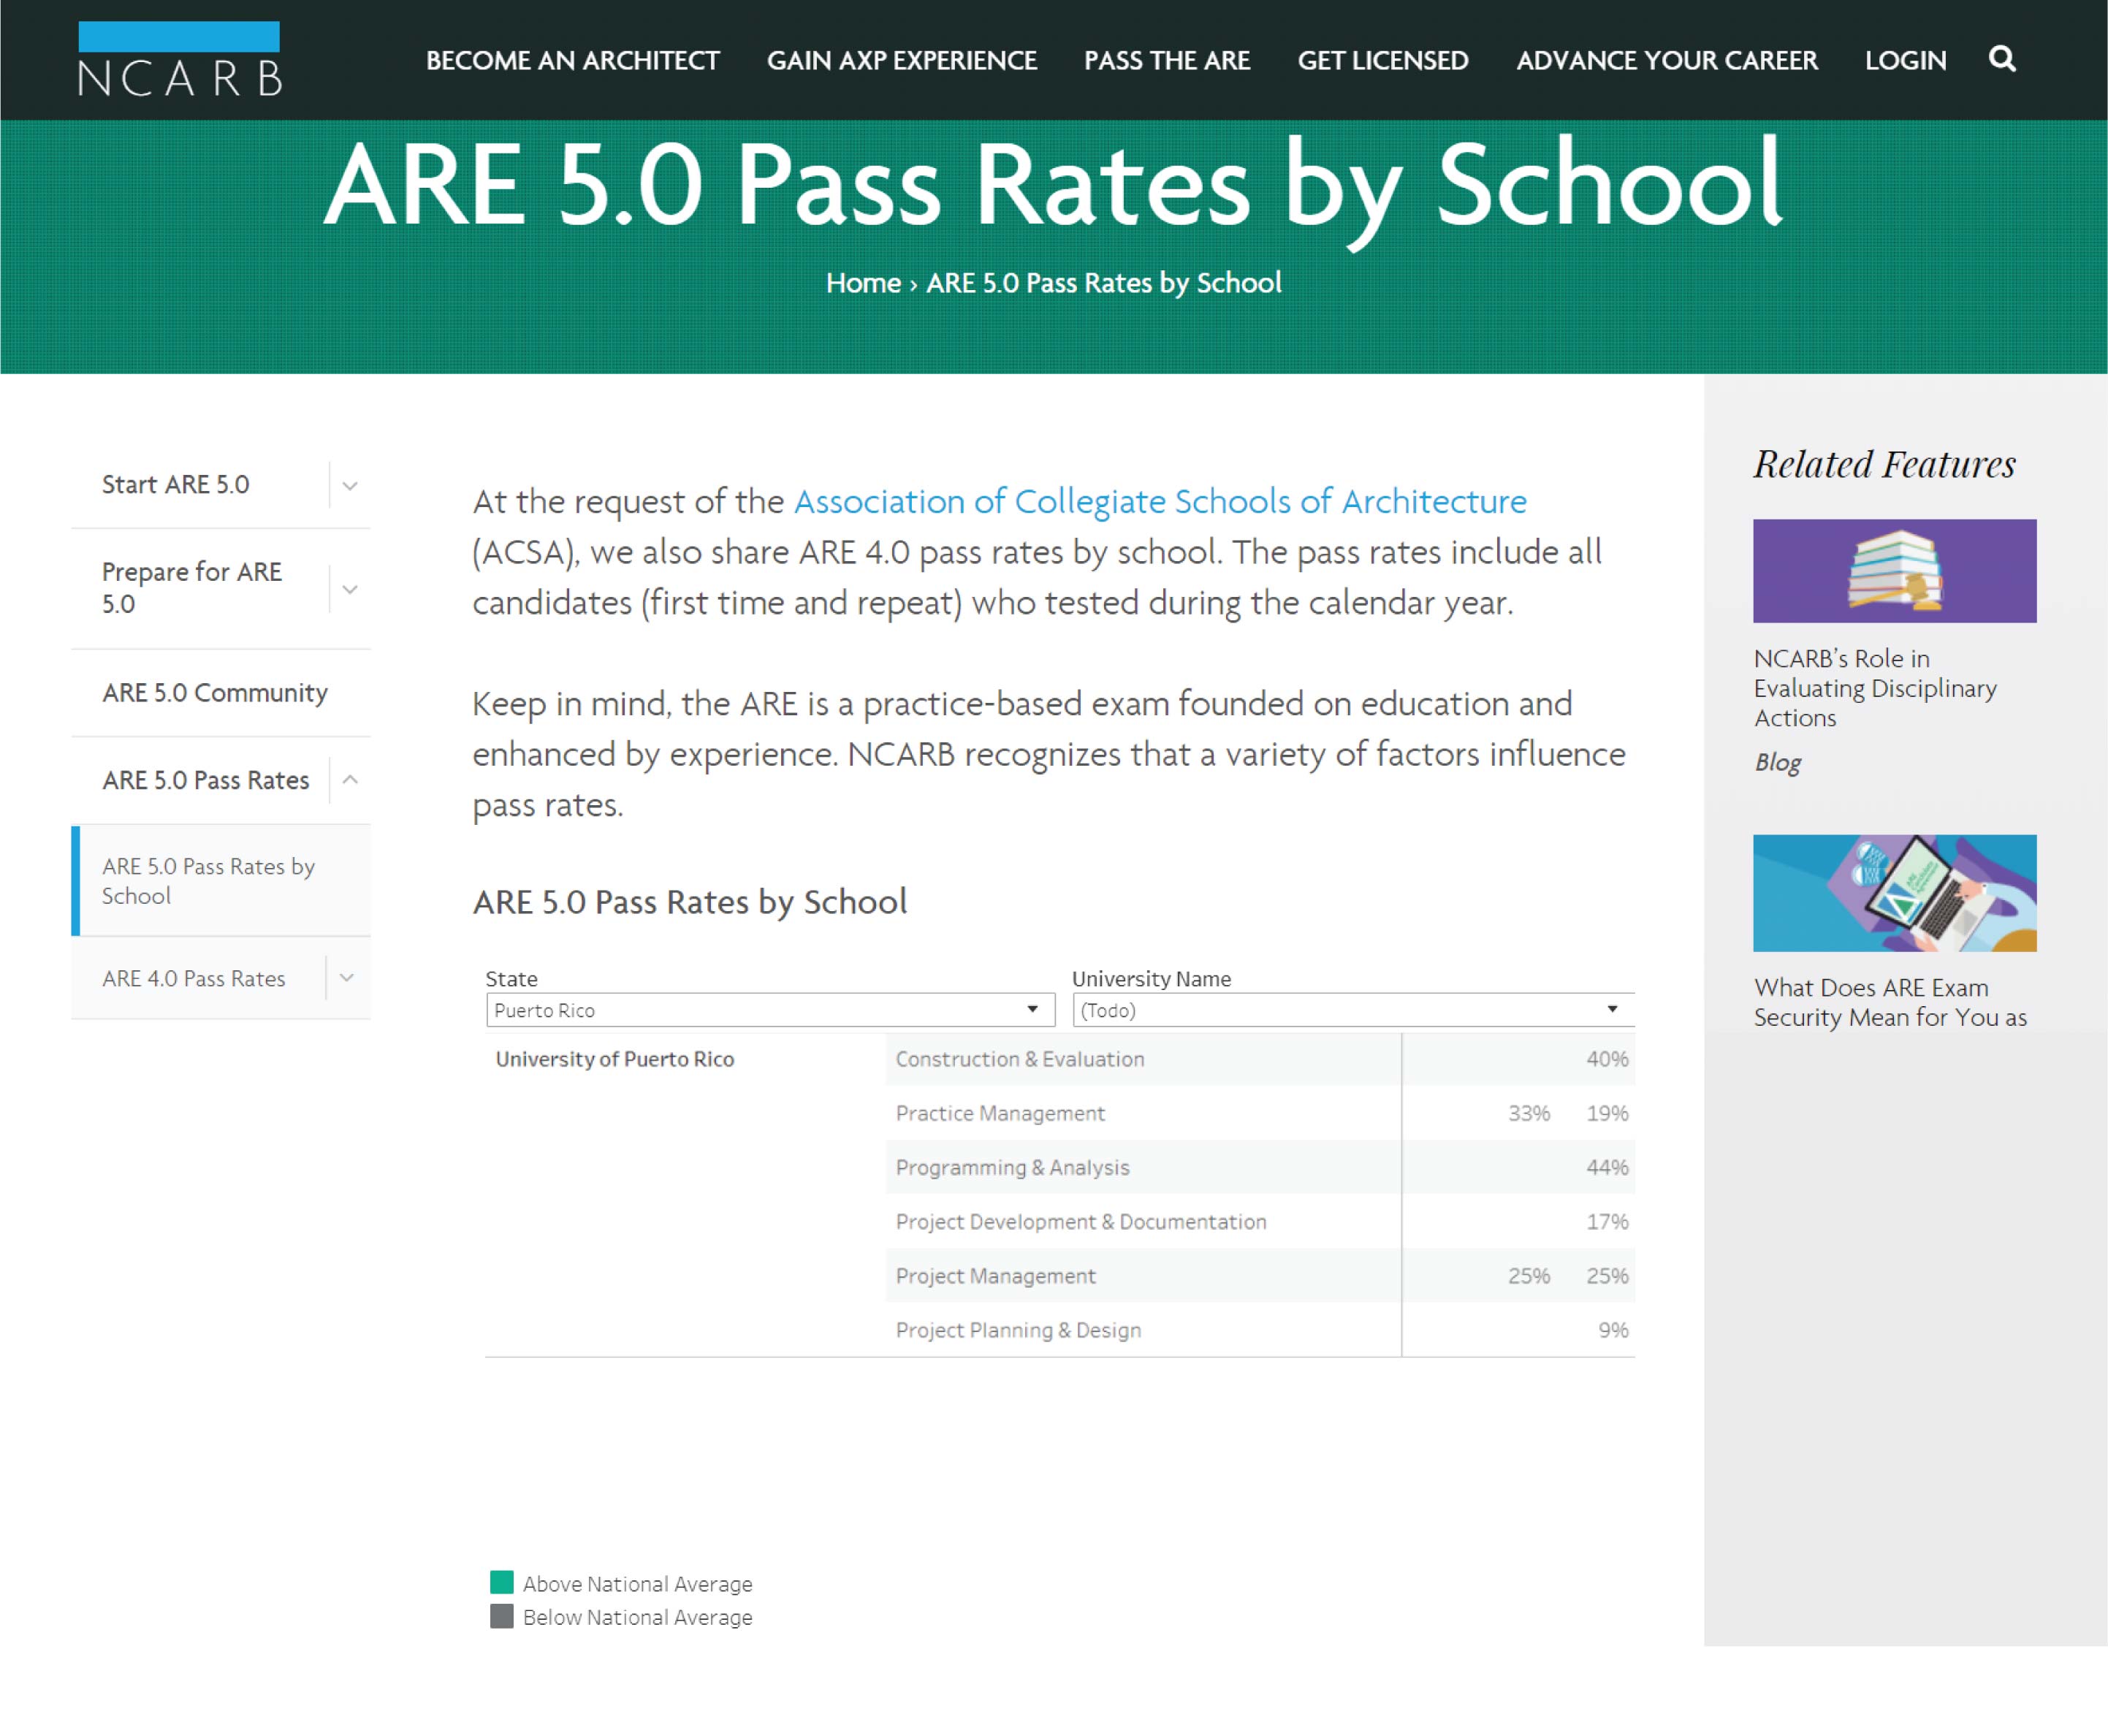 Imagen sobre ARE 5.0 Pass Rates by School de nuestra Escuela UPR